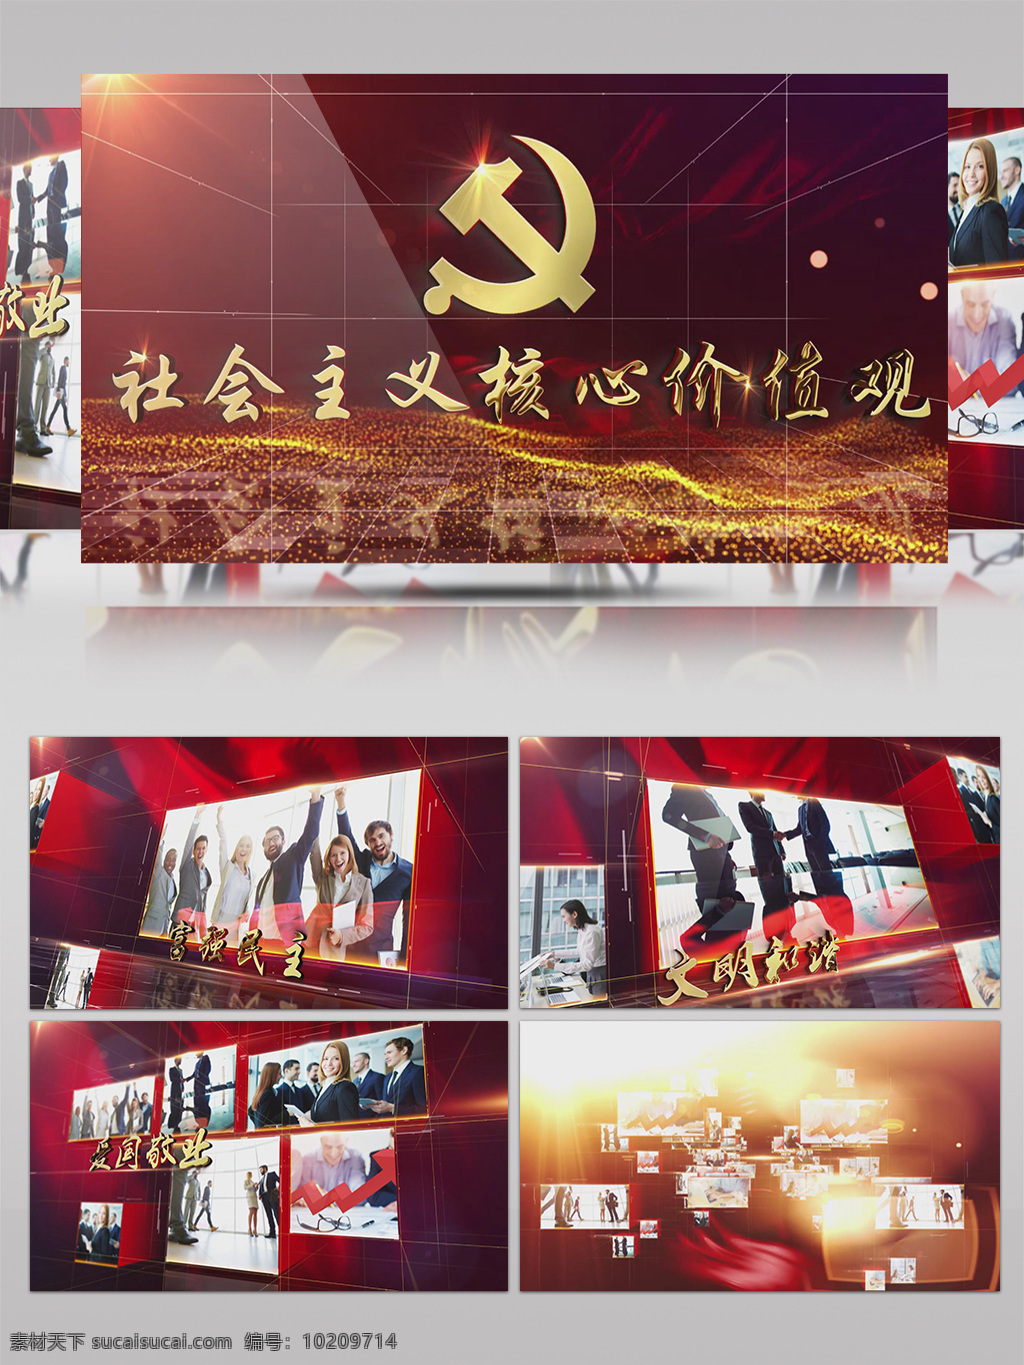 党建 系列 社会主义 核心 价值观 宣传片 包装 党的纪律 党的代表 共产主义 奋斗终身 党的宣传 开幕片头